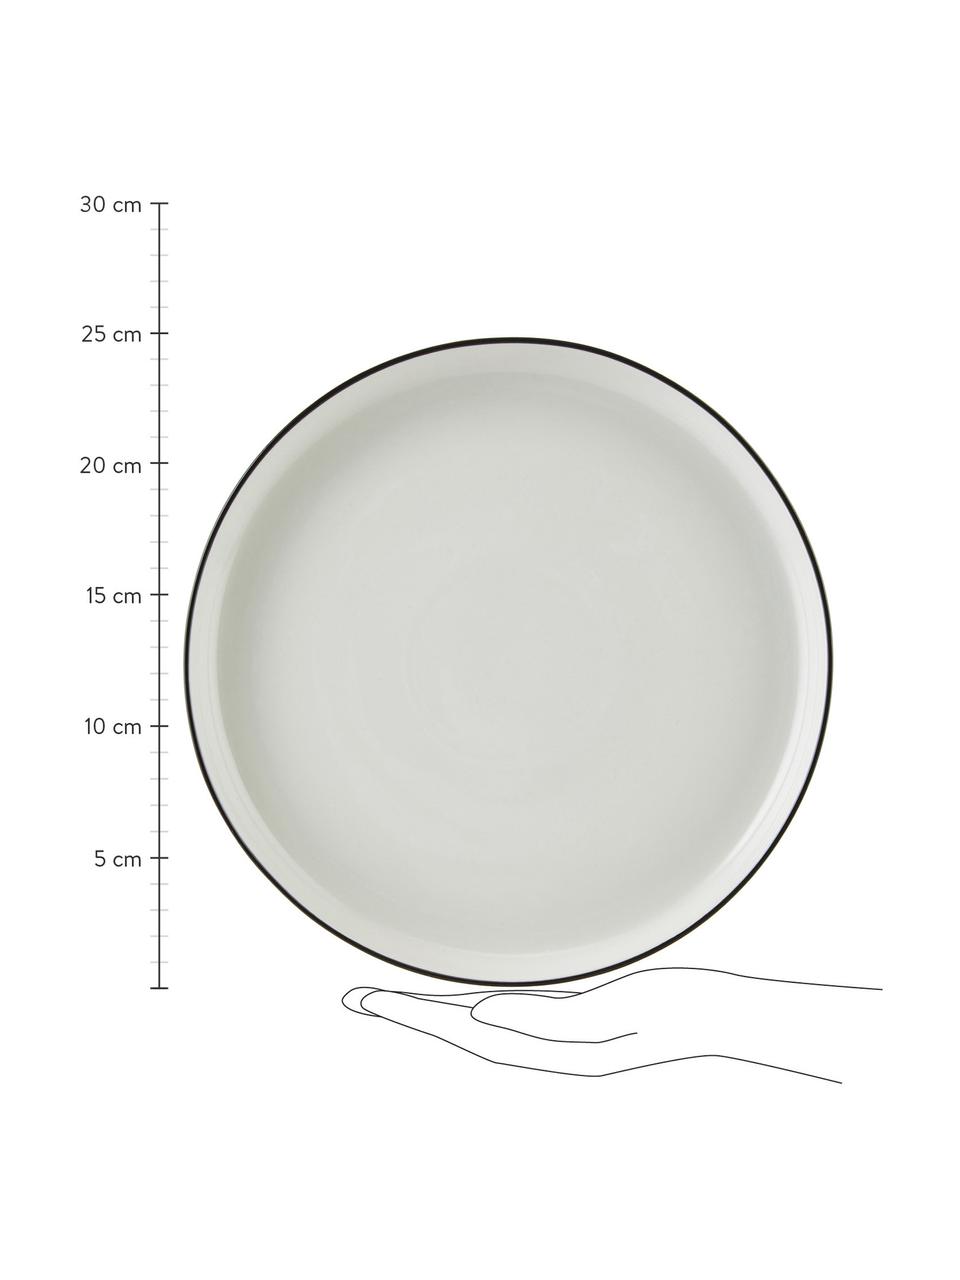 Piatto piano in porcellana con bordo nero Facile 2 pz, Ø 25 cm, Porcellana solida di alta qualità (ca. 50% caolino, 25% quarzo e 25% feldspato), Bianco crema, nero, Ø 25 x Alt. 3 cm